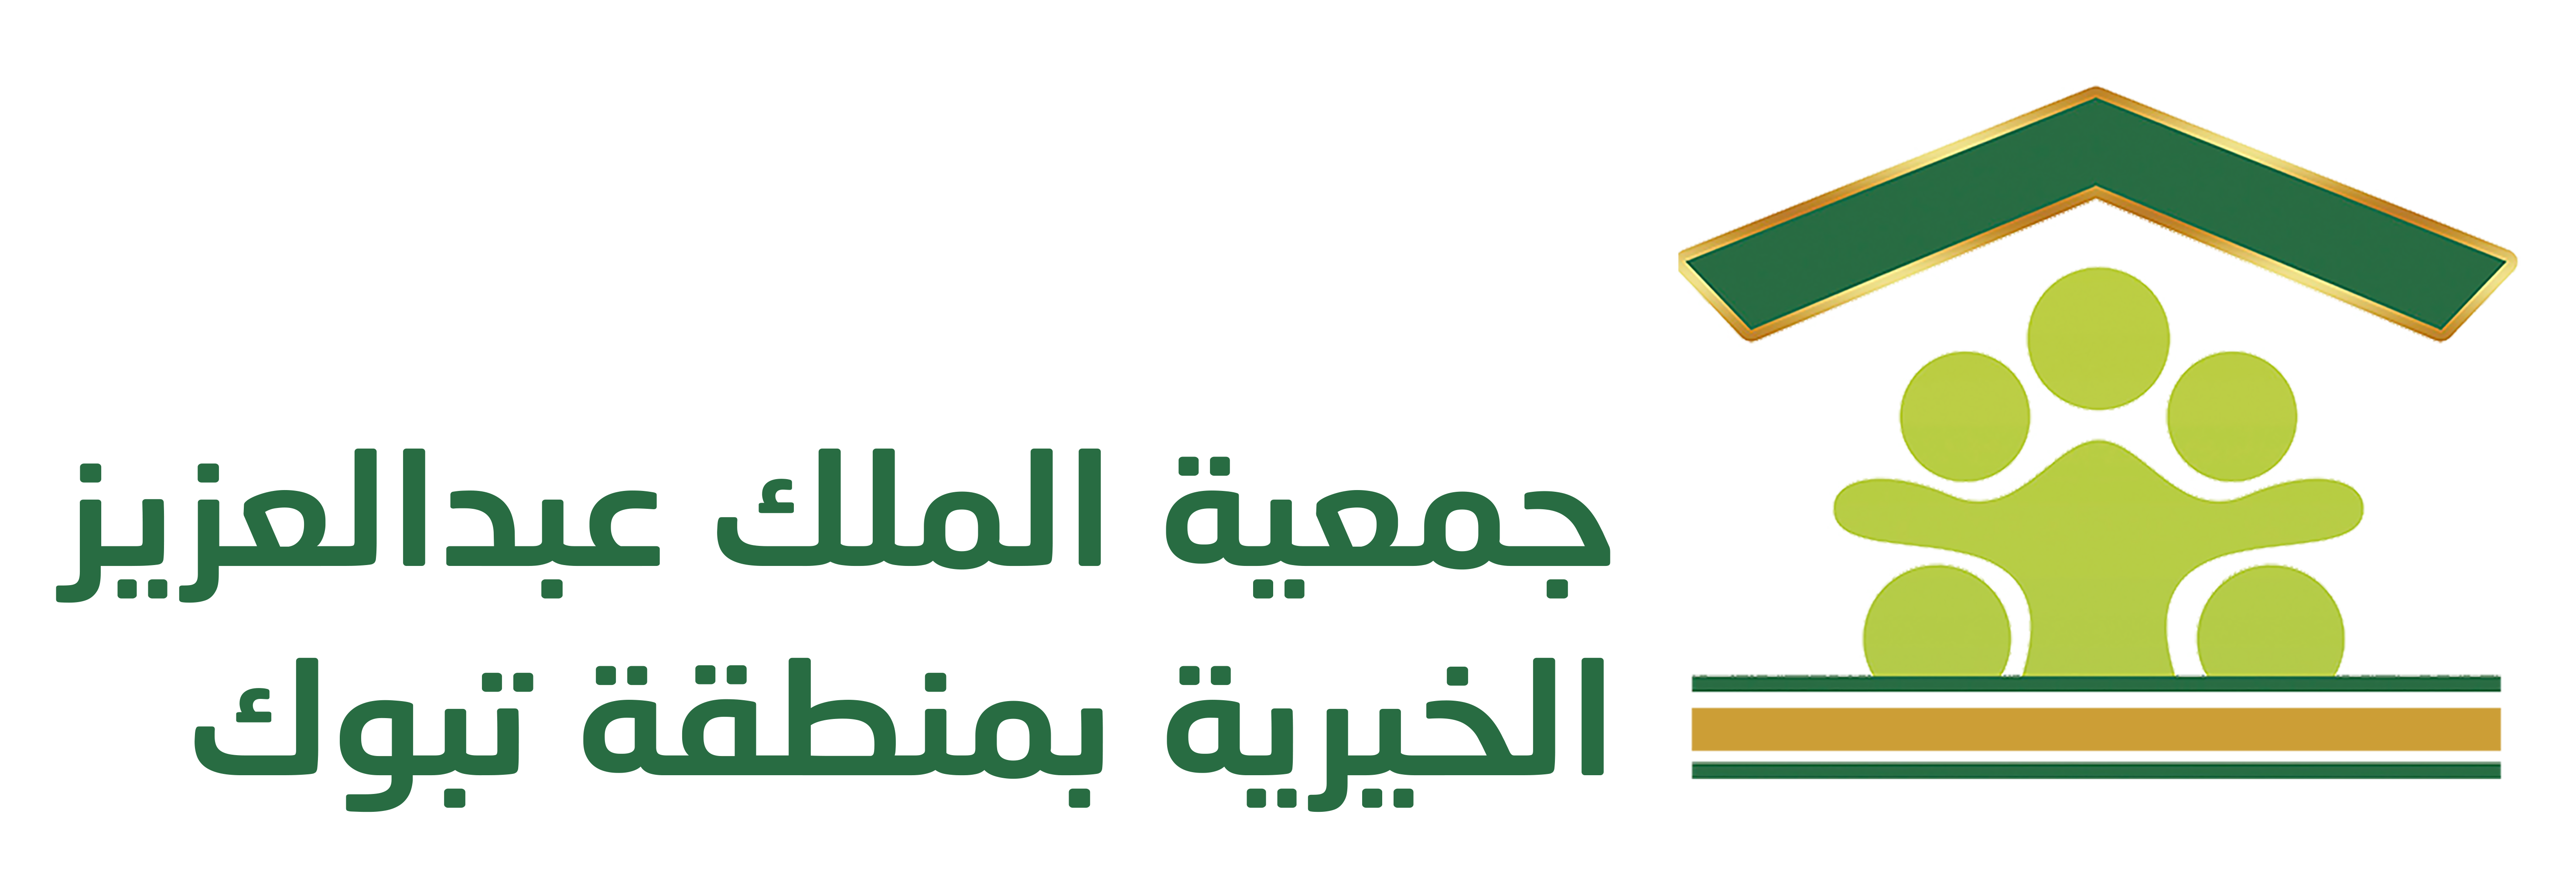 جمعية الملك عبد العزيز الخيرية بتبوك